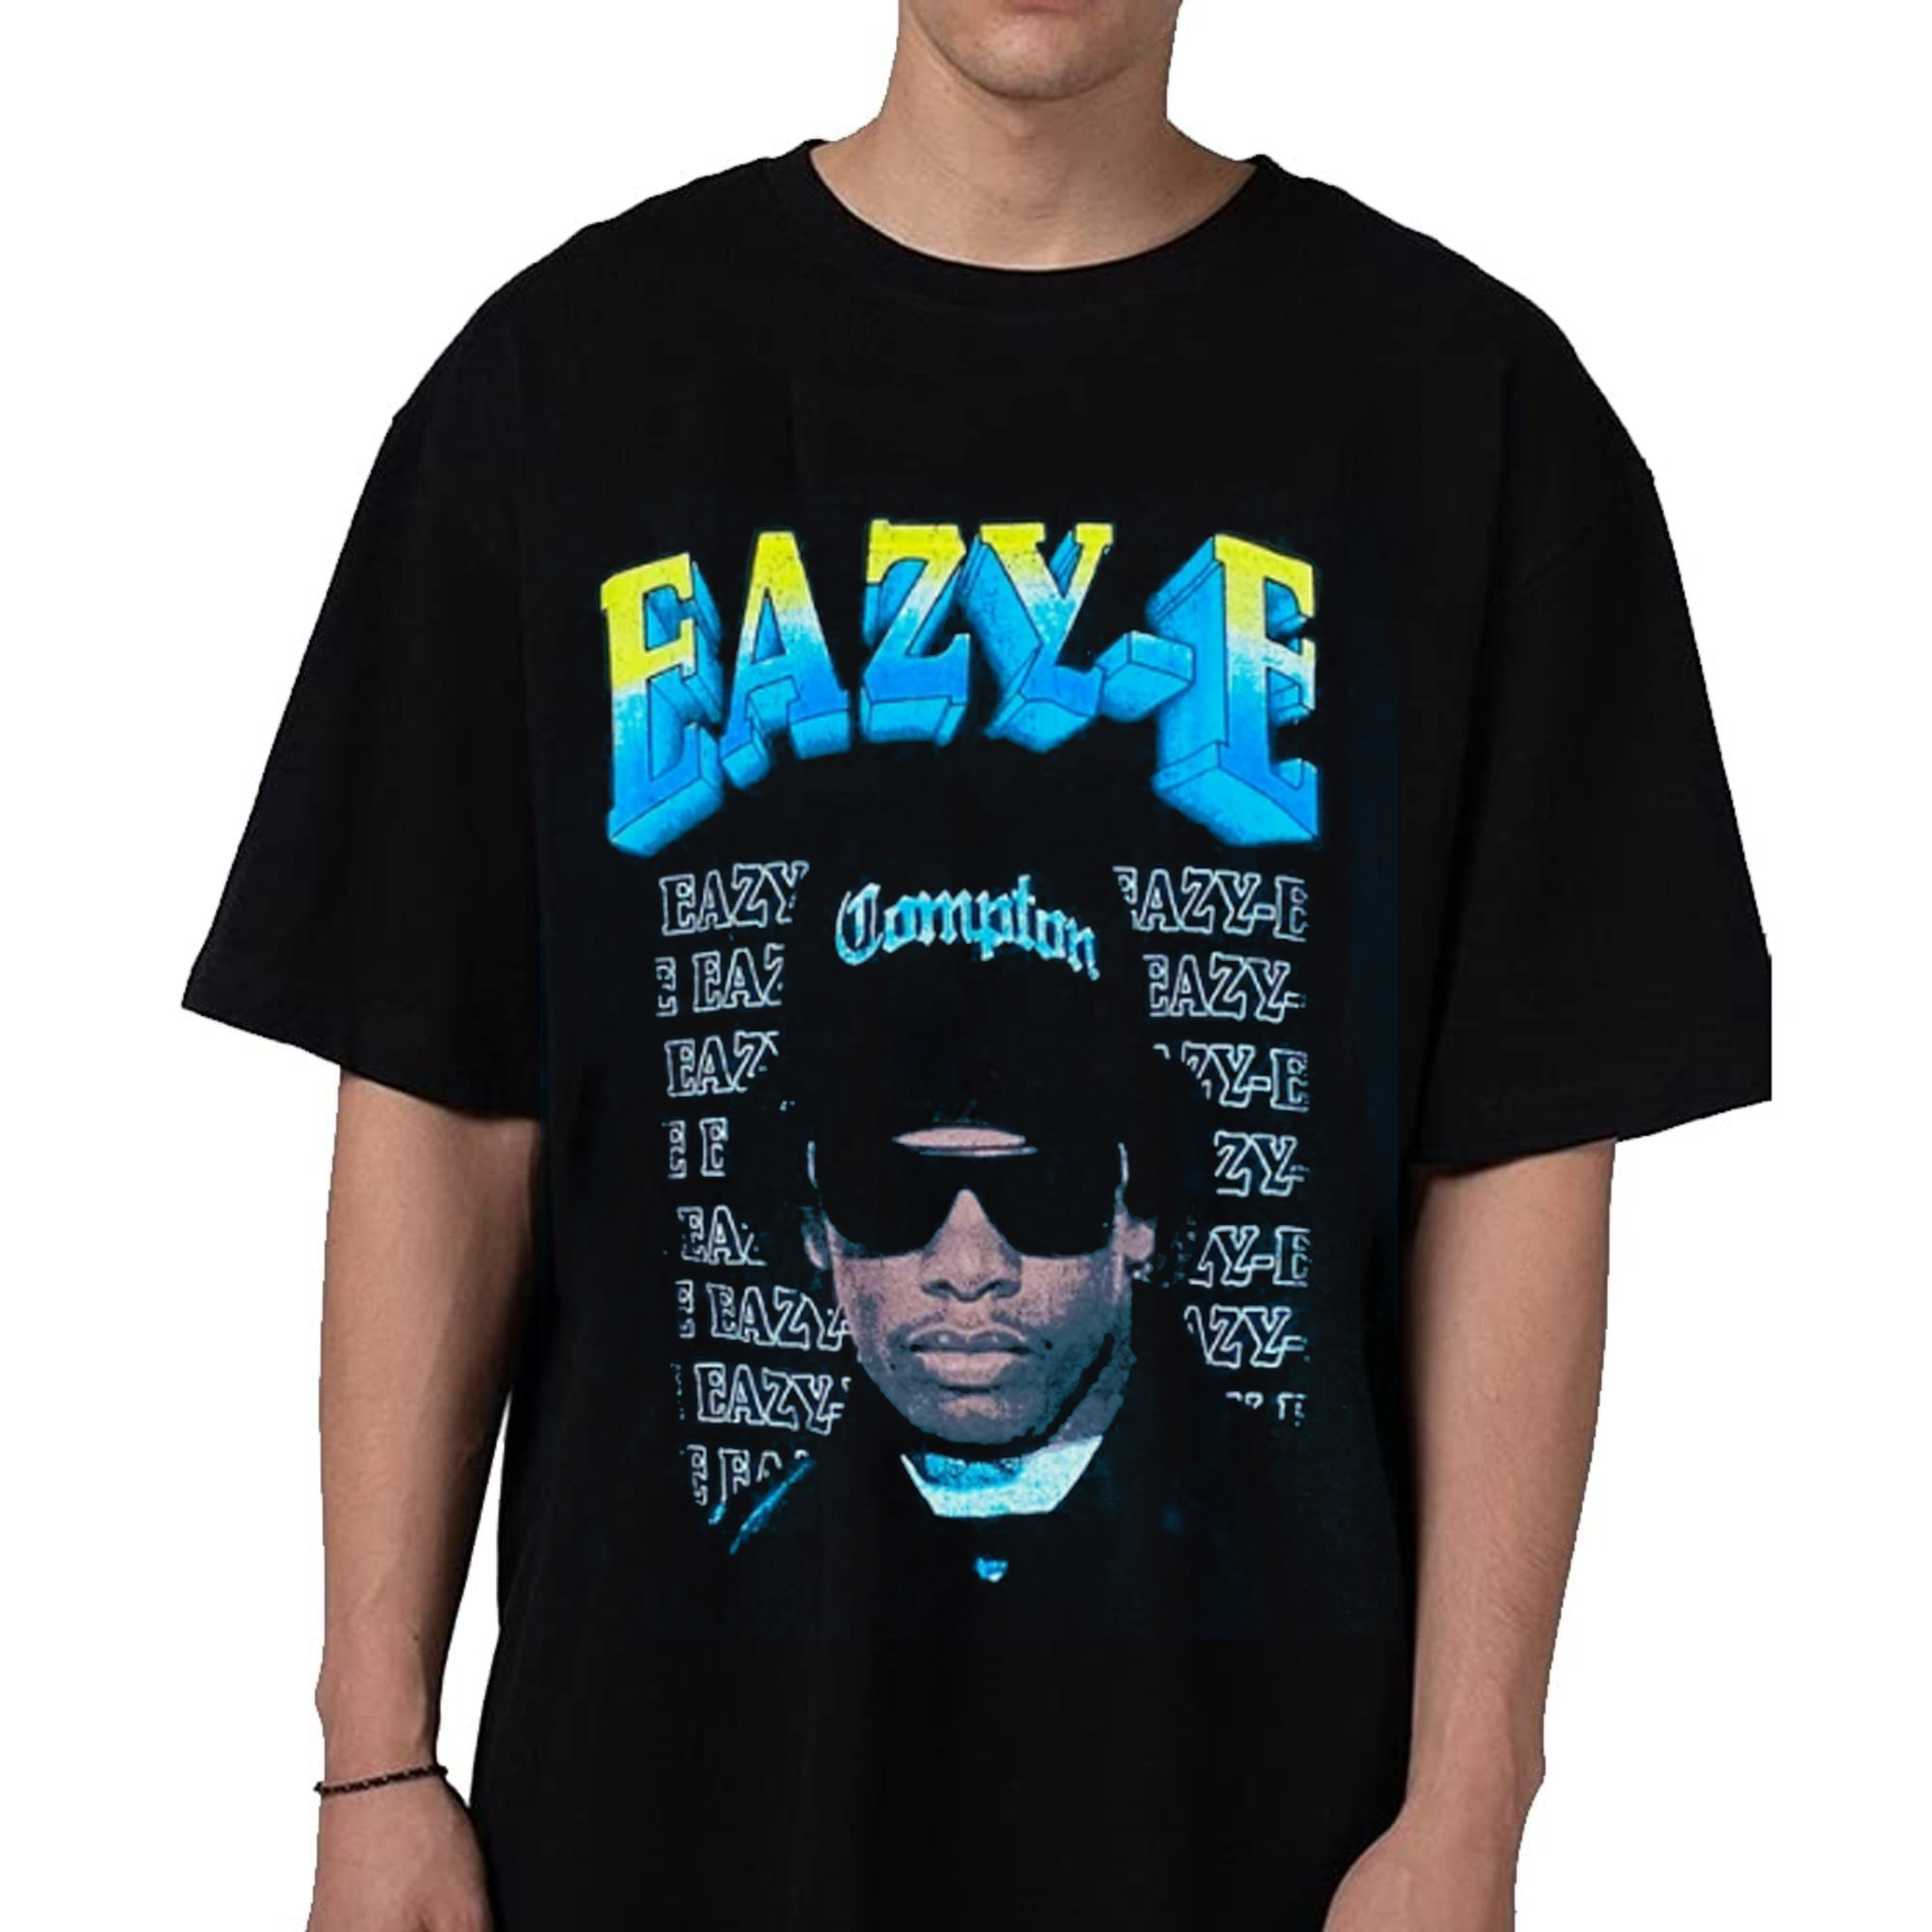 Eazy-e shirt